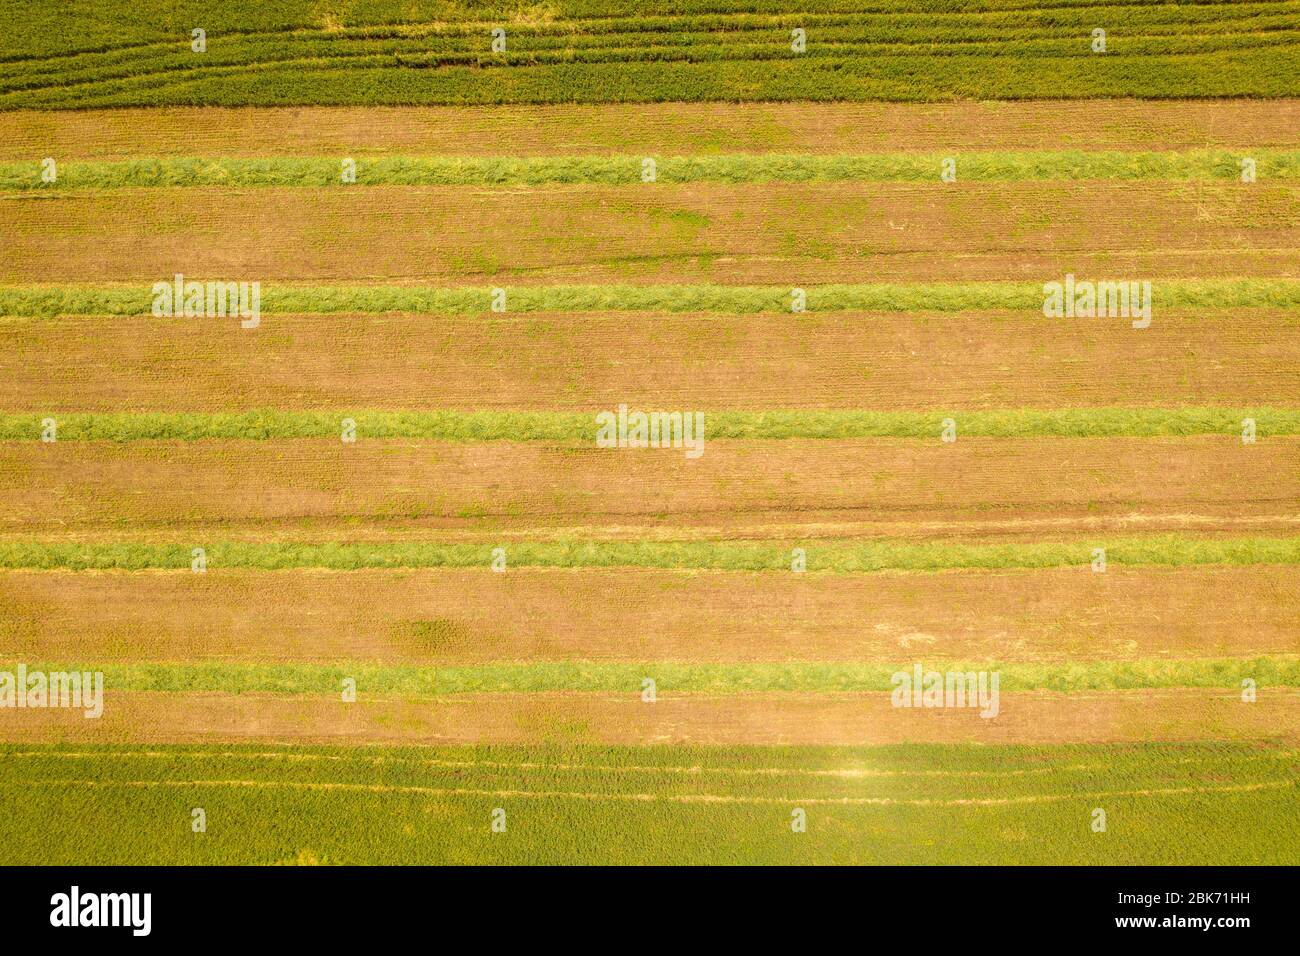 Campo agricolo con file di insilato raccolto, immagine aerea. Foto Stock